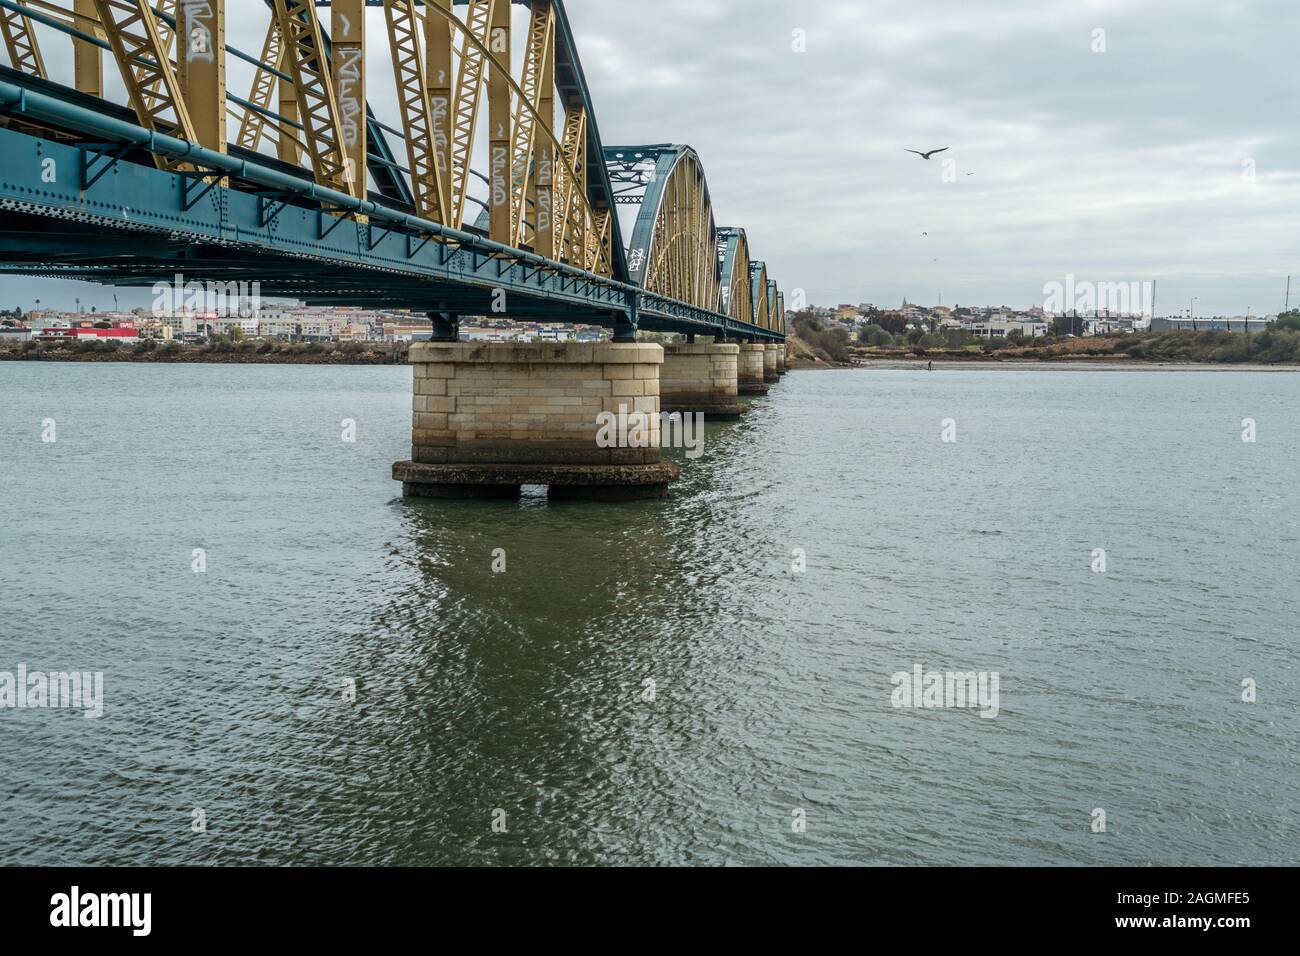 Rail bridge over the river in Portimao, Portugal Stock Photo